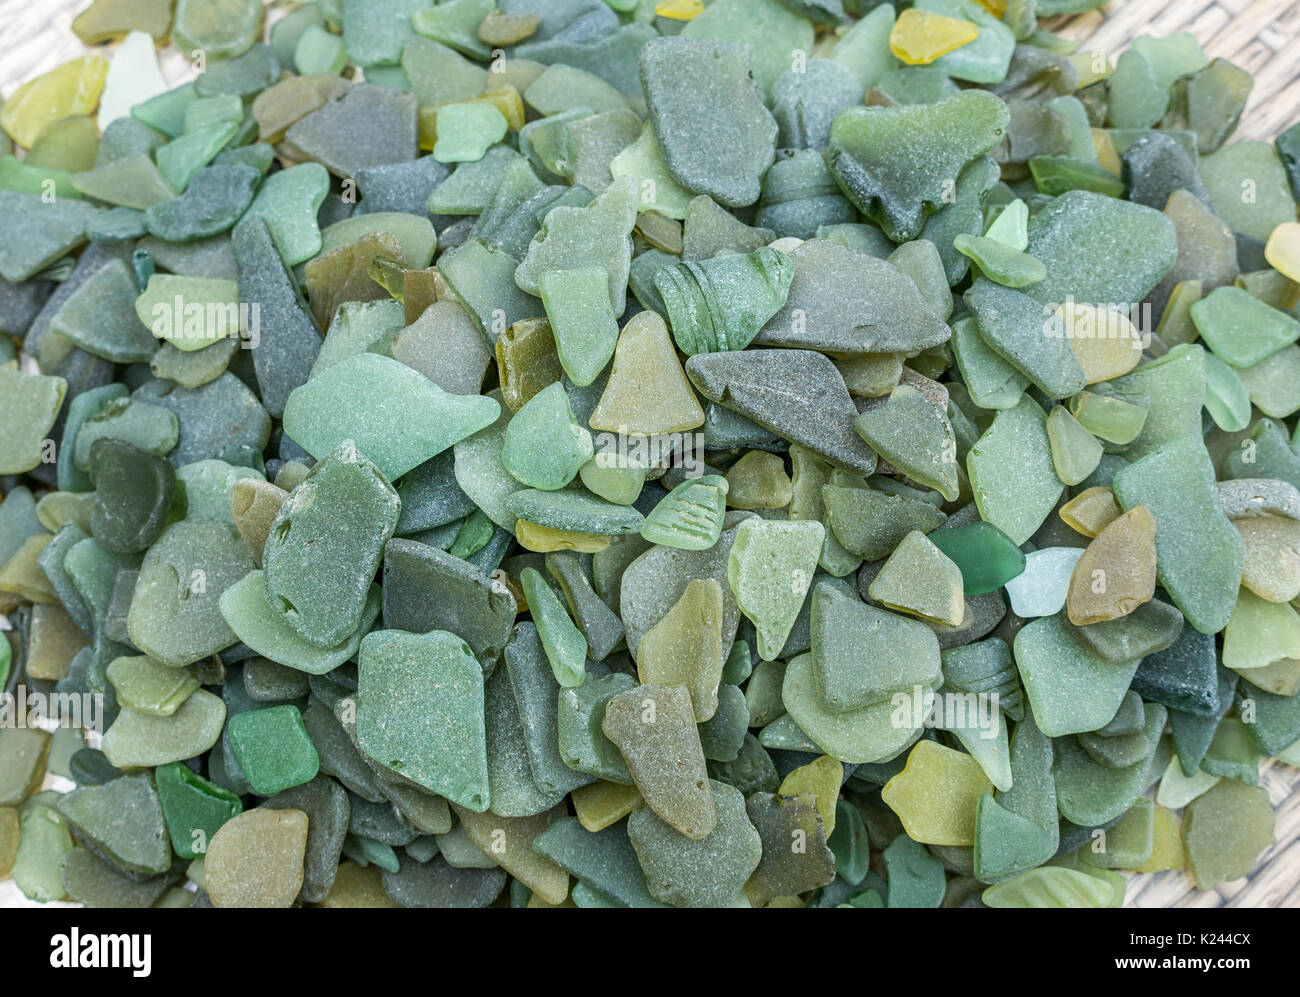 In der Nähe von Meer getragen Olive Green sea glass Collection. Meer Glas Stücke von schottischen Stränden, Schottland, Großbritannien Stockfoto